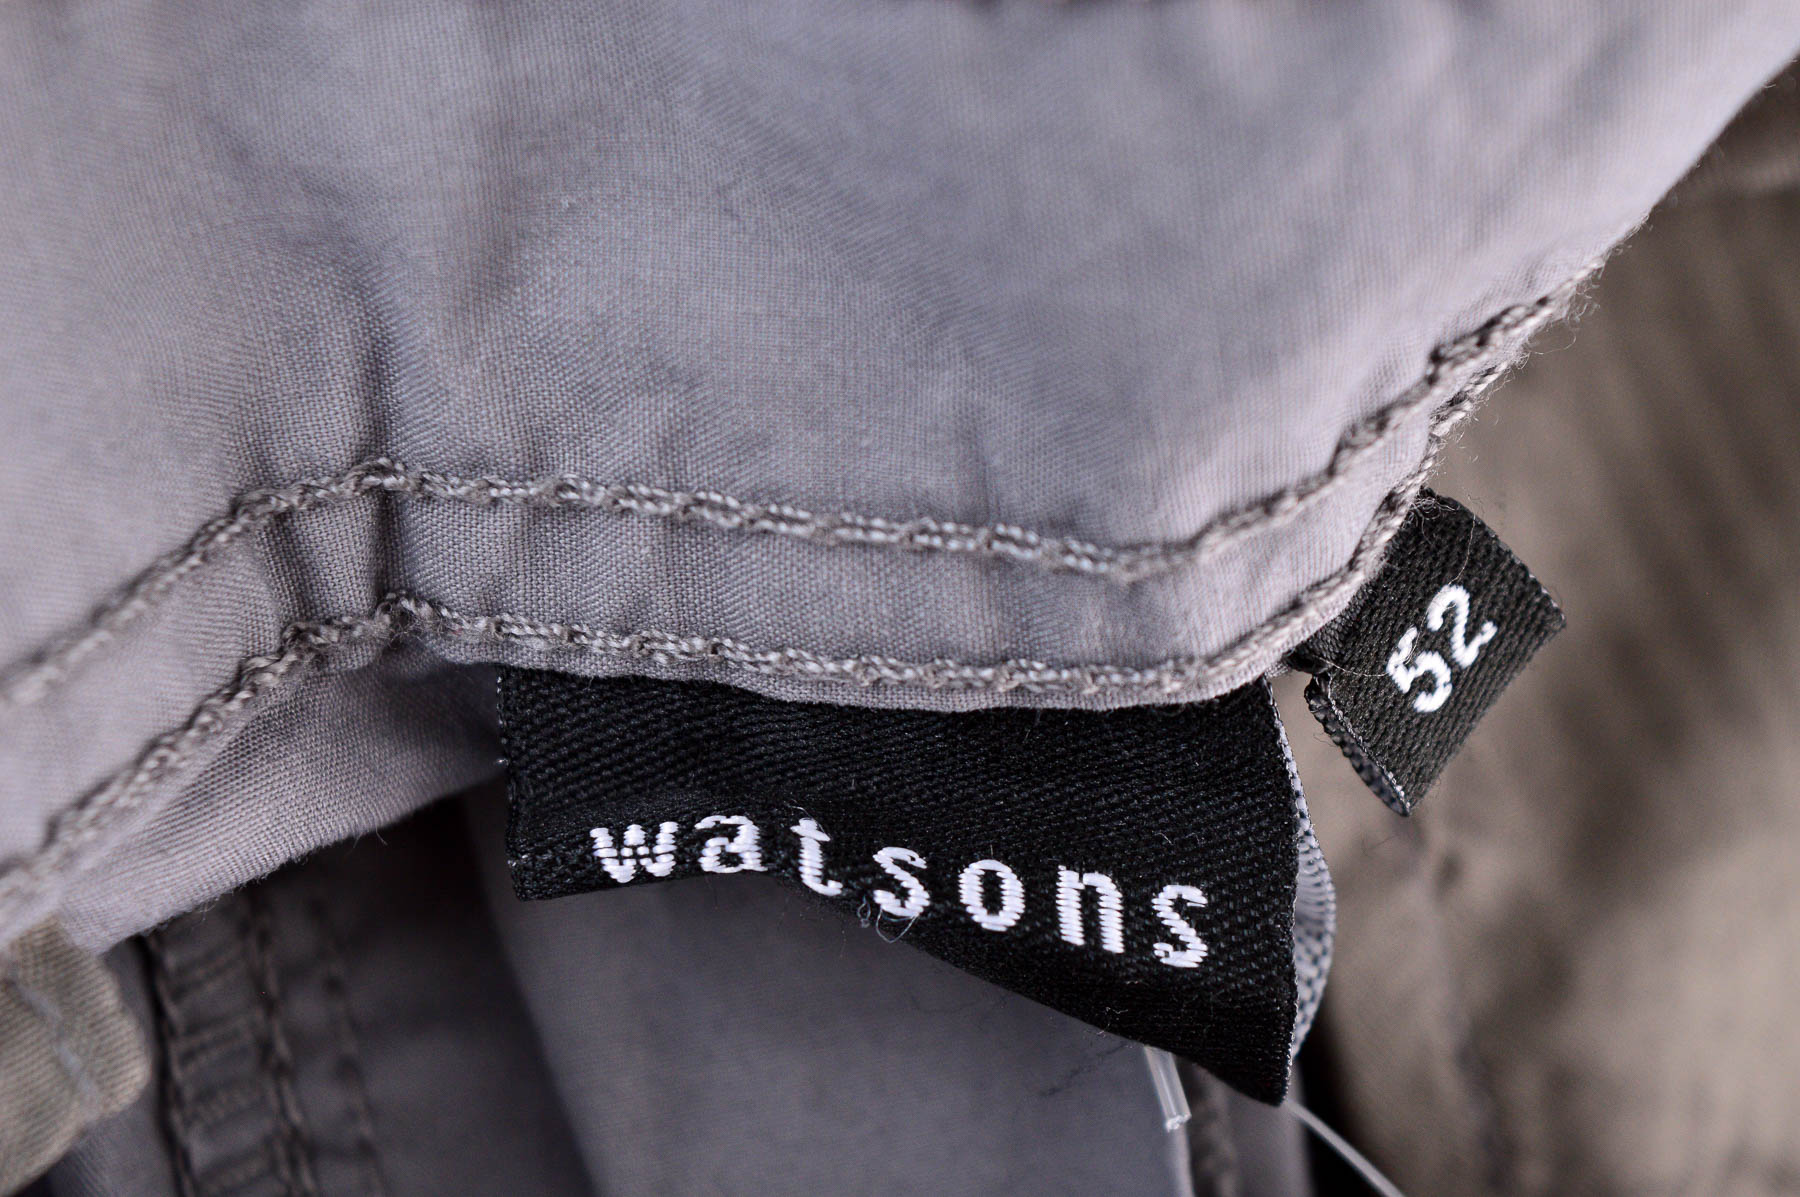 Men's shorts - Watsons - 2